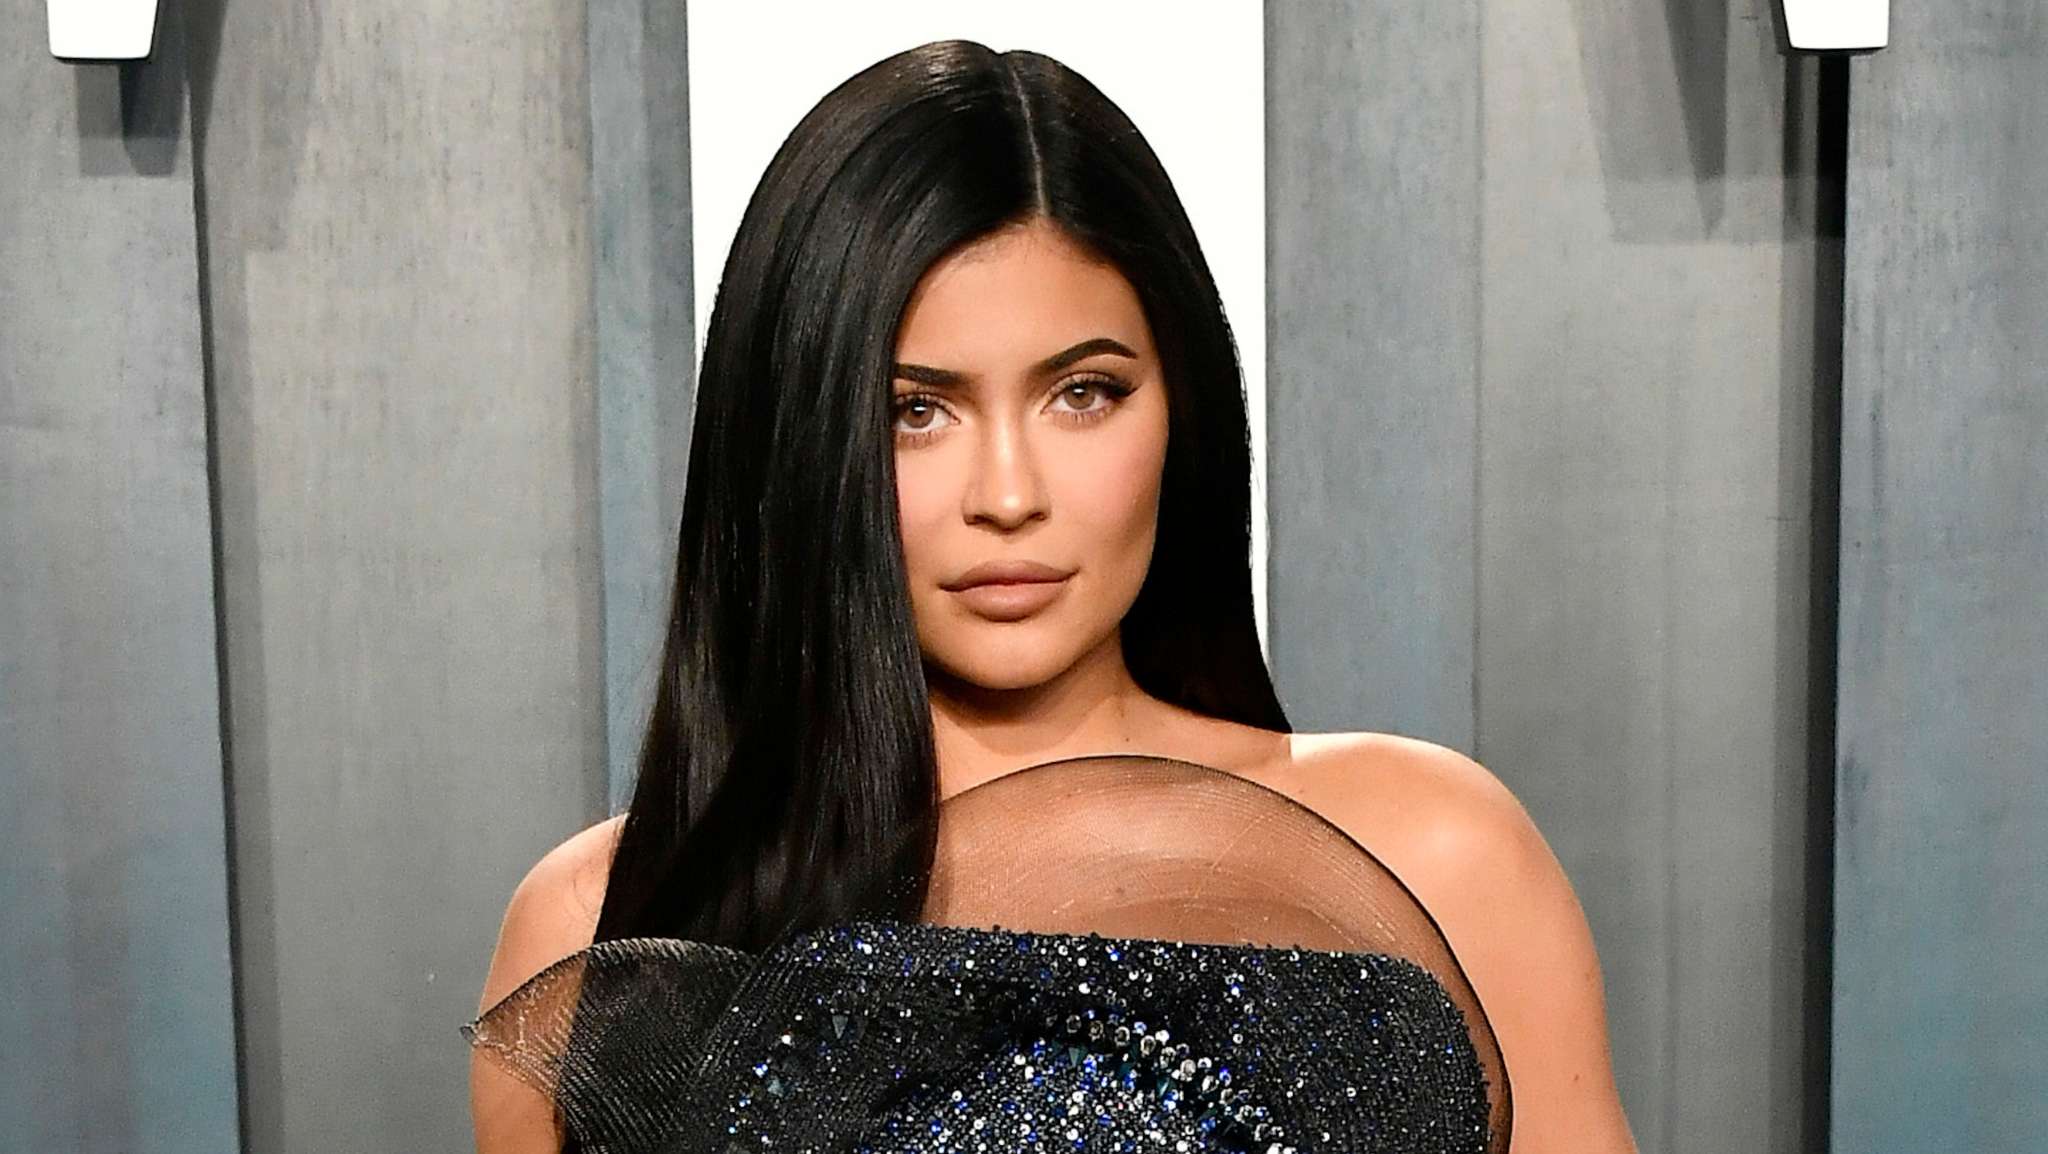 Kylie Jenner Lands in Hot Water Over $450 Louis Vuitton Chopsticks